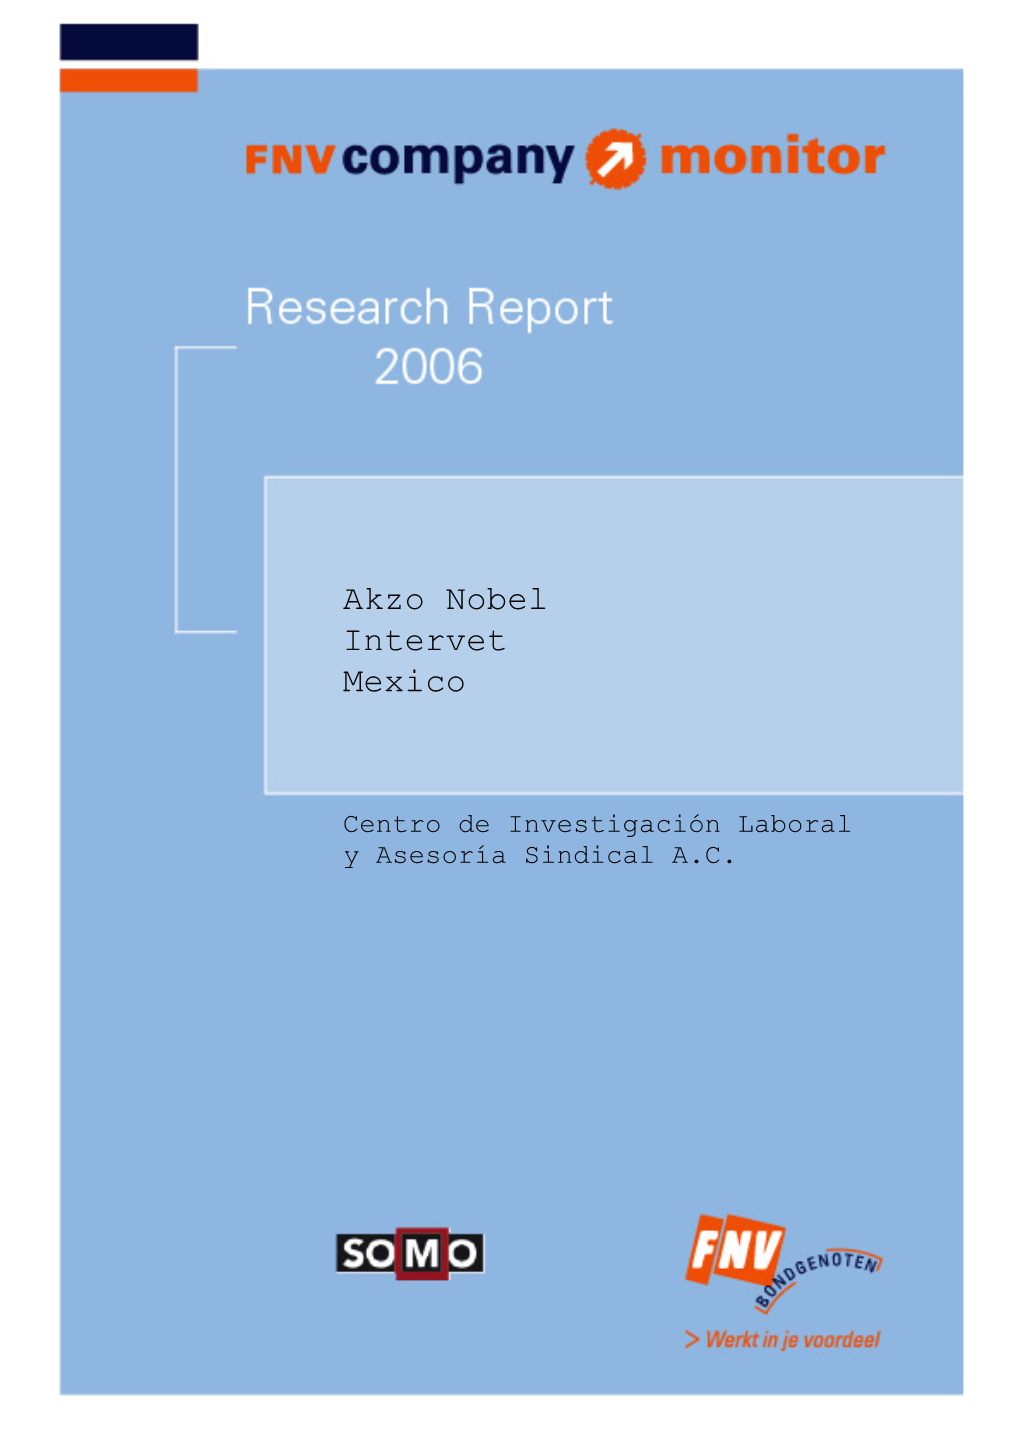 Akzo Nobel Intervet Mexico